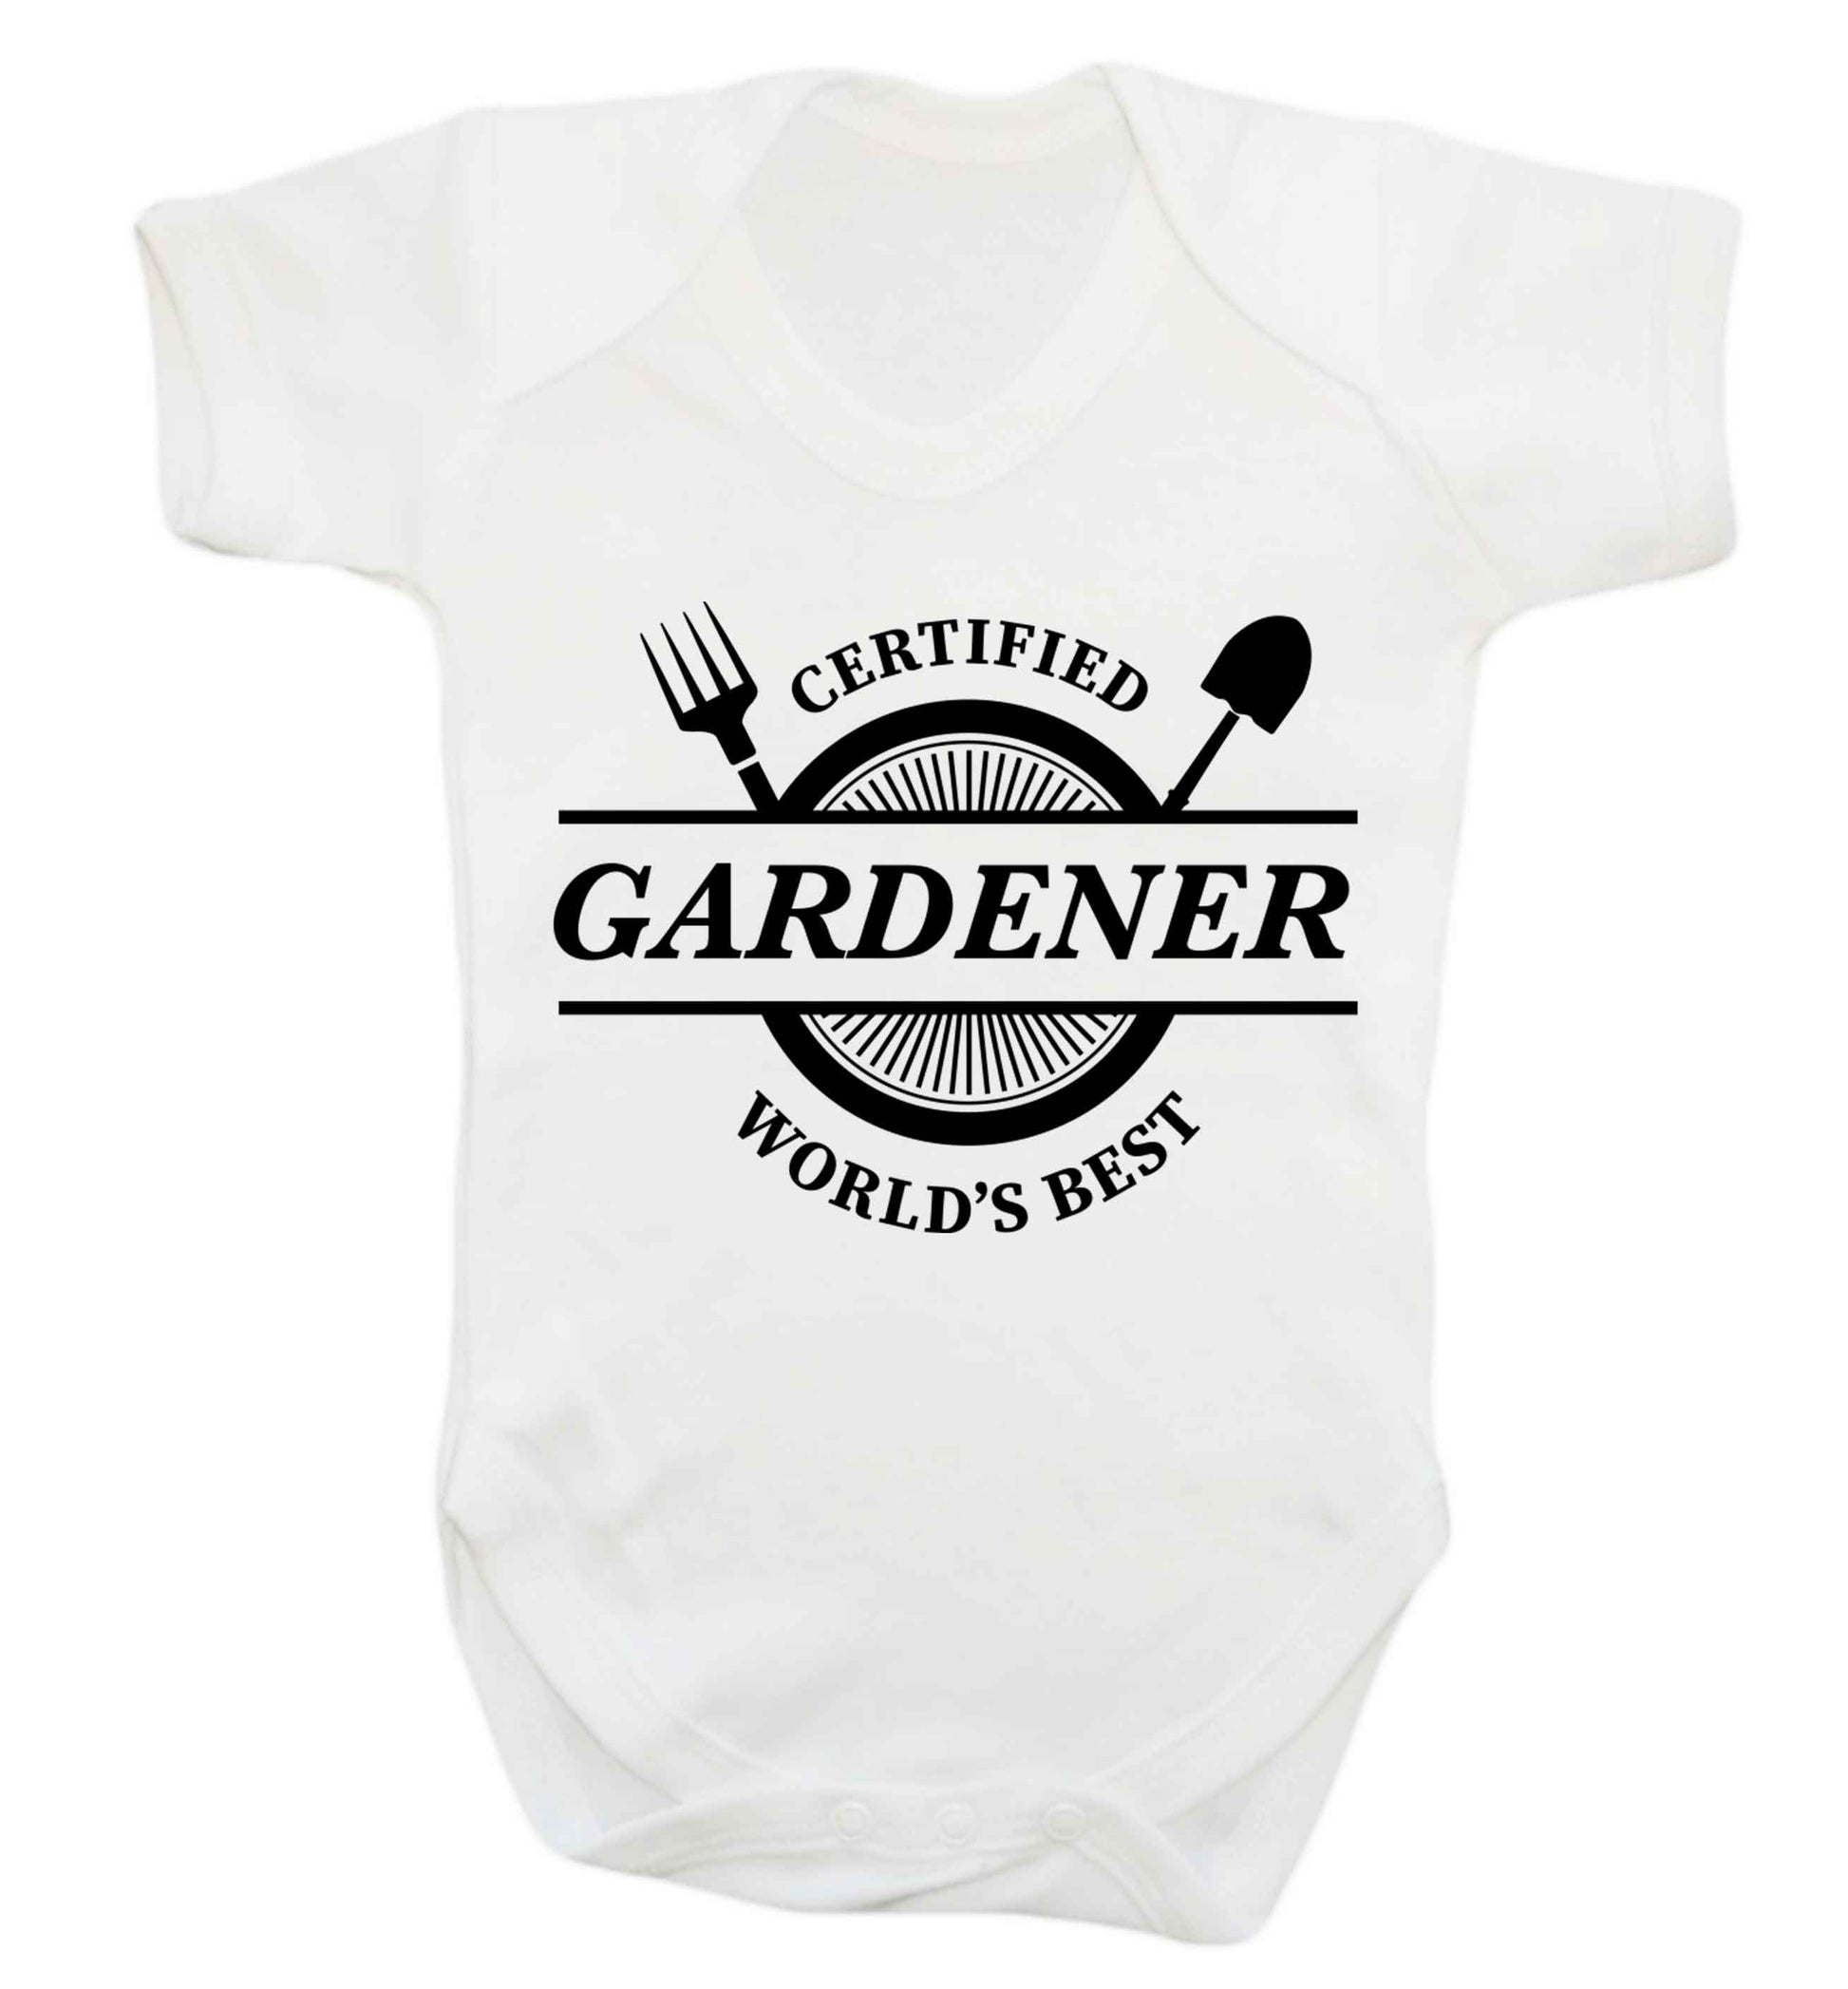 Certified gardener worlds best Baby Vest white 18-24 months